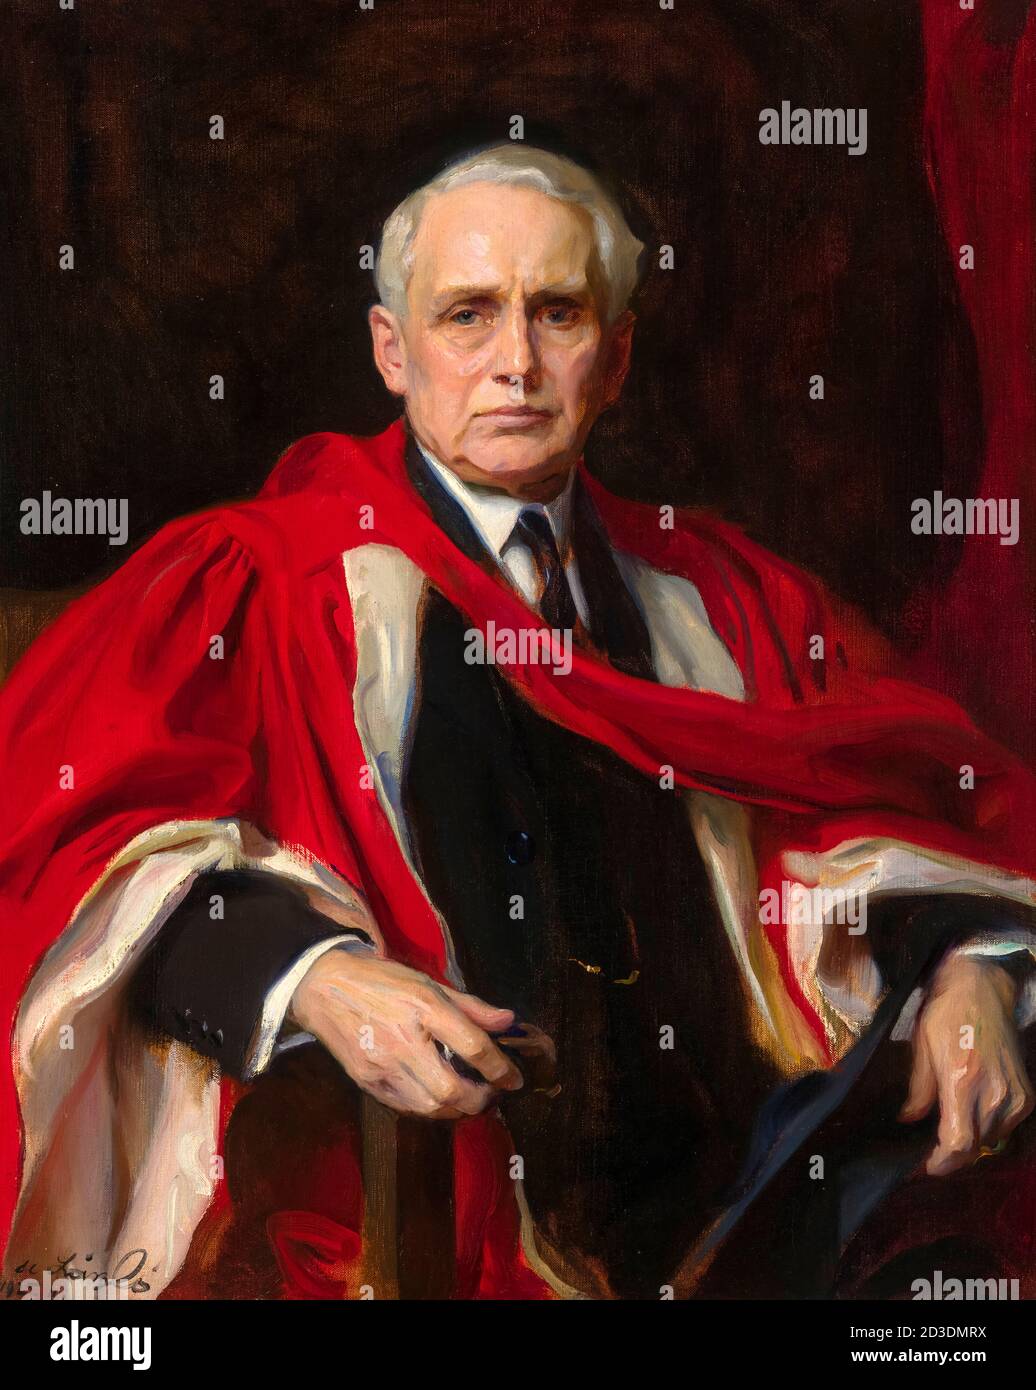 Frank Billings Kellogg (1856-1937), avvocato, politico e statista americano, ritratto di Philip de László, 1925 Foto Stock